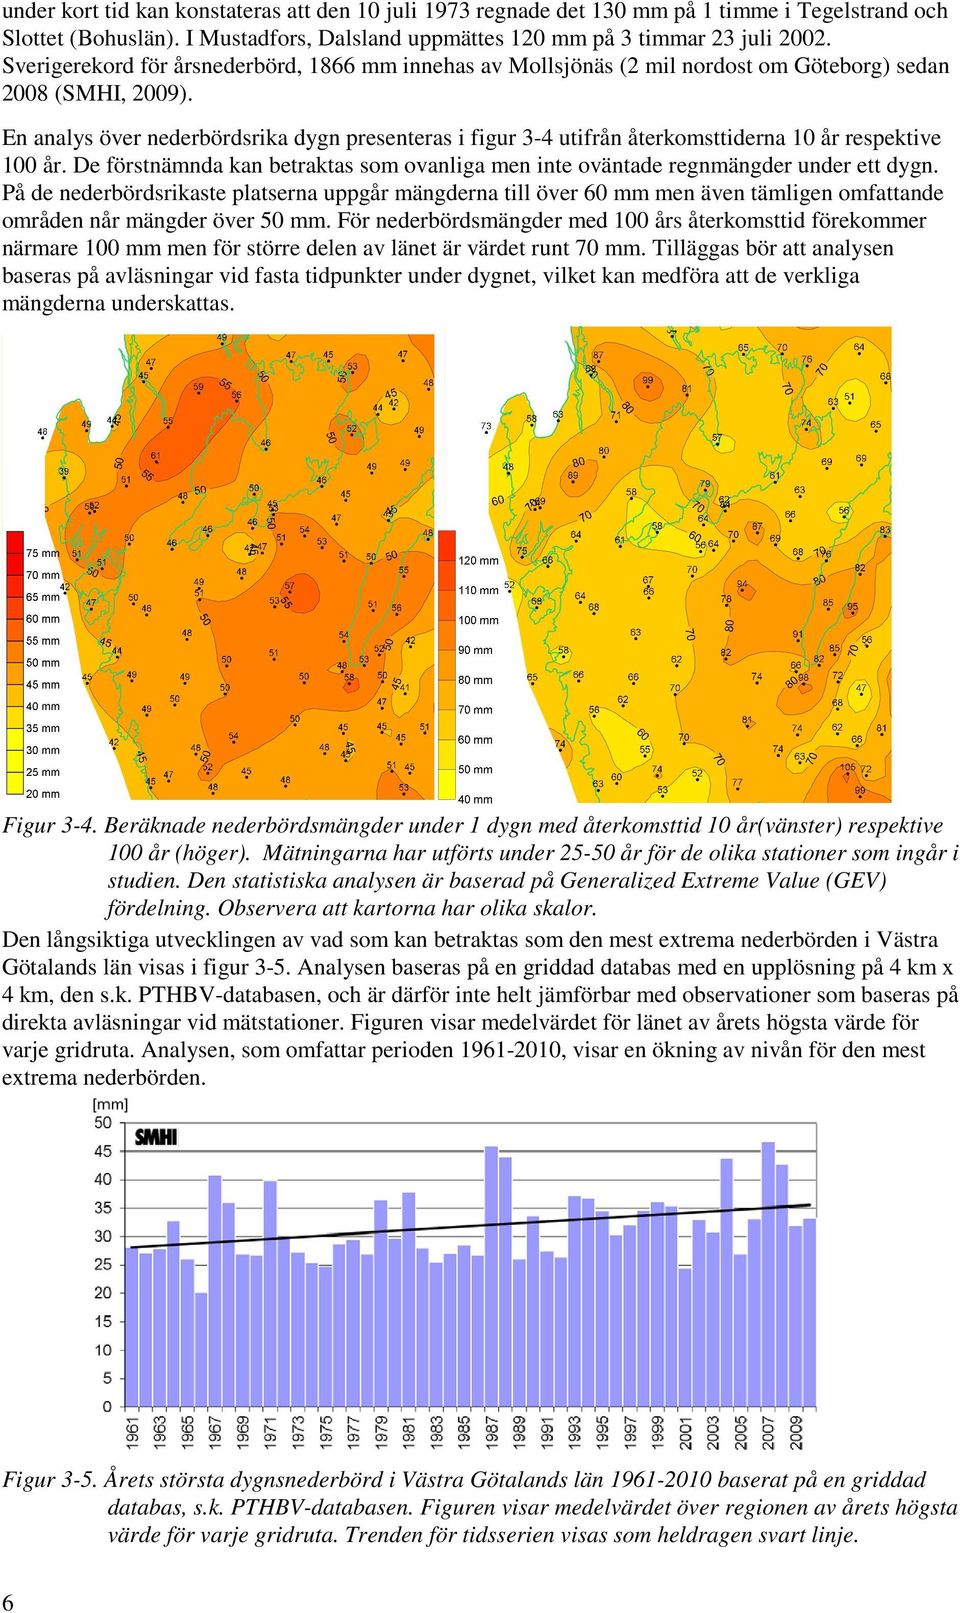 En analys över nederbördsrika dygn presenteras i figur 3-4 utifrån återkomsttiderna 10 år respektive 100 år. De förstnämnda kan betraktas som ovanliga men inte oväntade regnmängder under ett dygn.